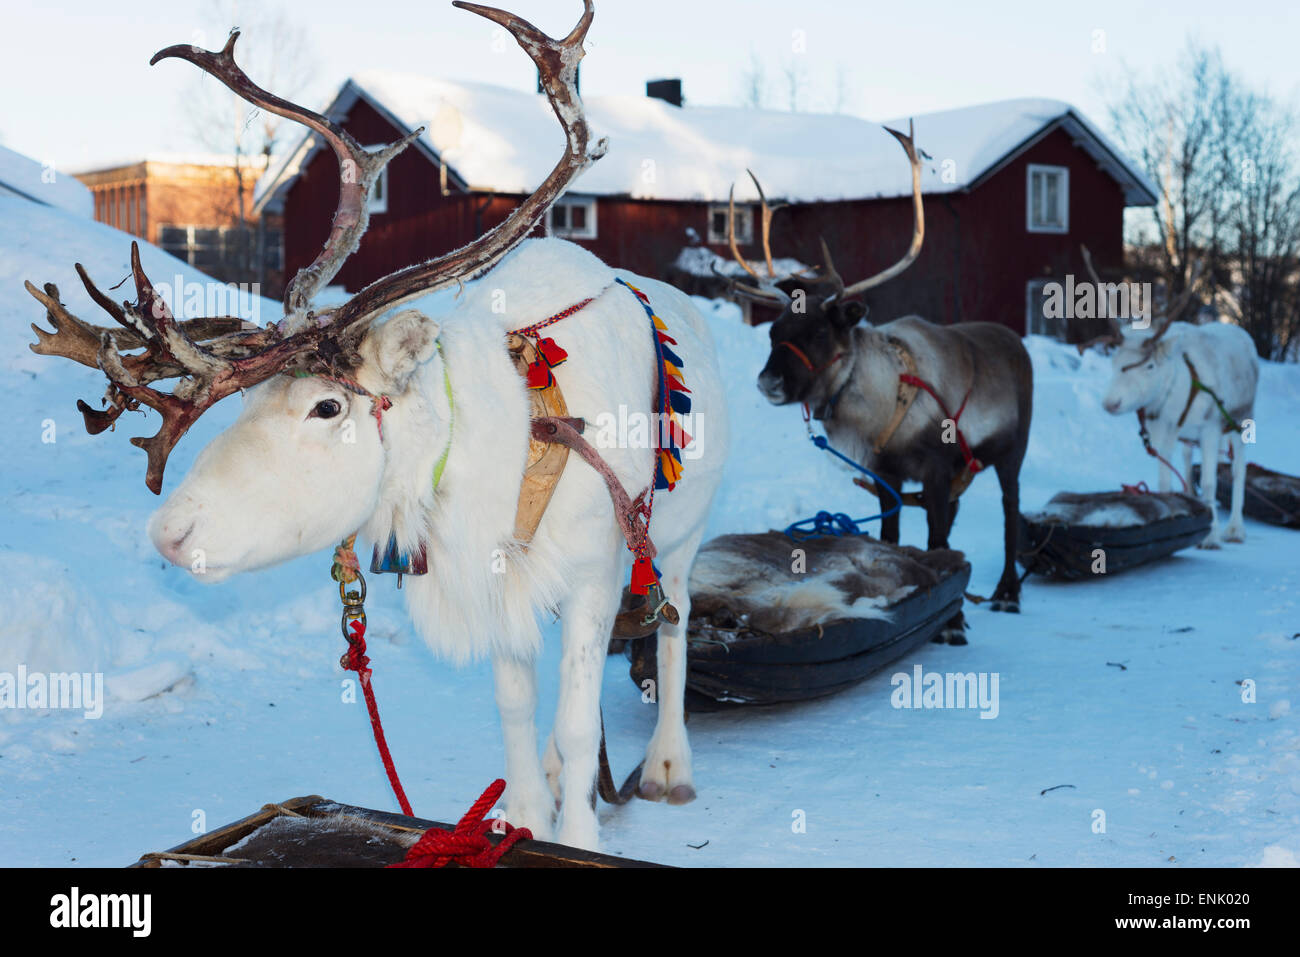 La renna, Festival Invernale, Jokkmokk, Lapponia, a nord del circolo polare artico, Svezia, Scandinavia, Europa Foto Stock